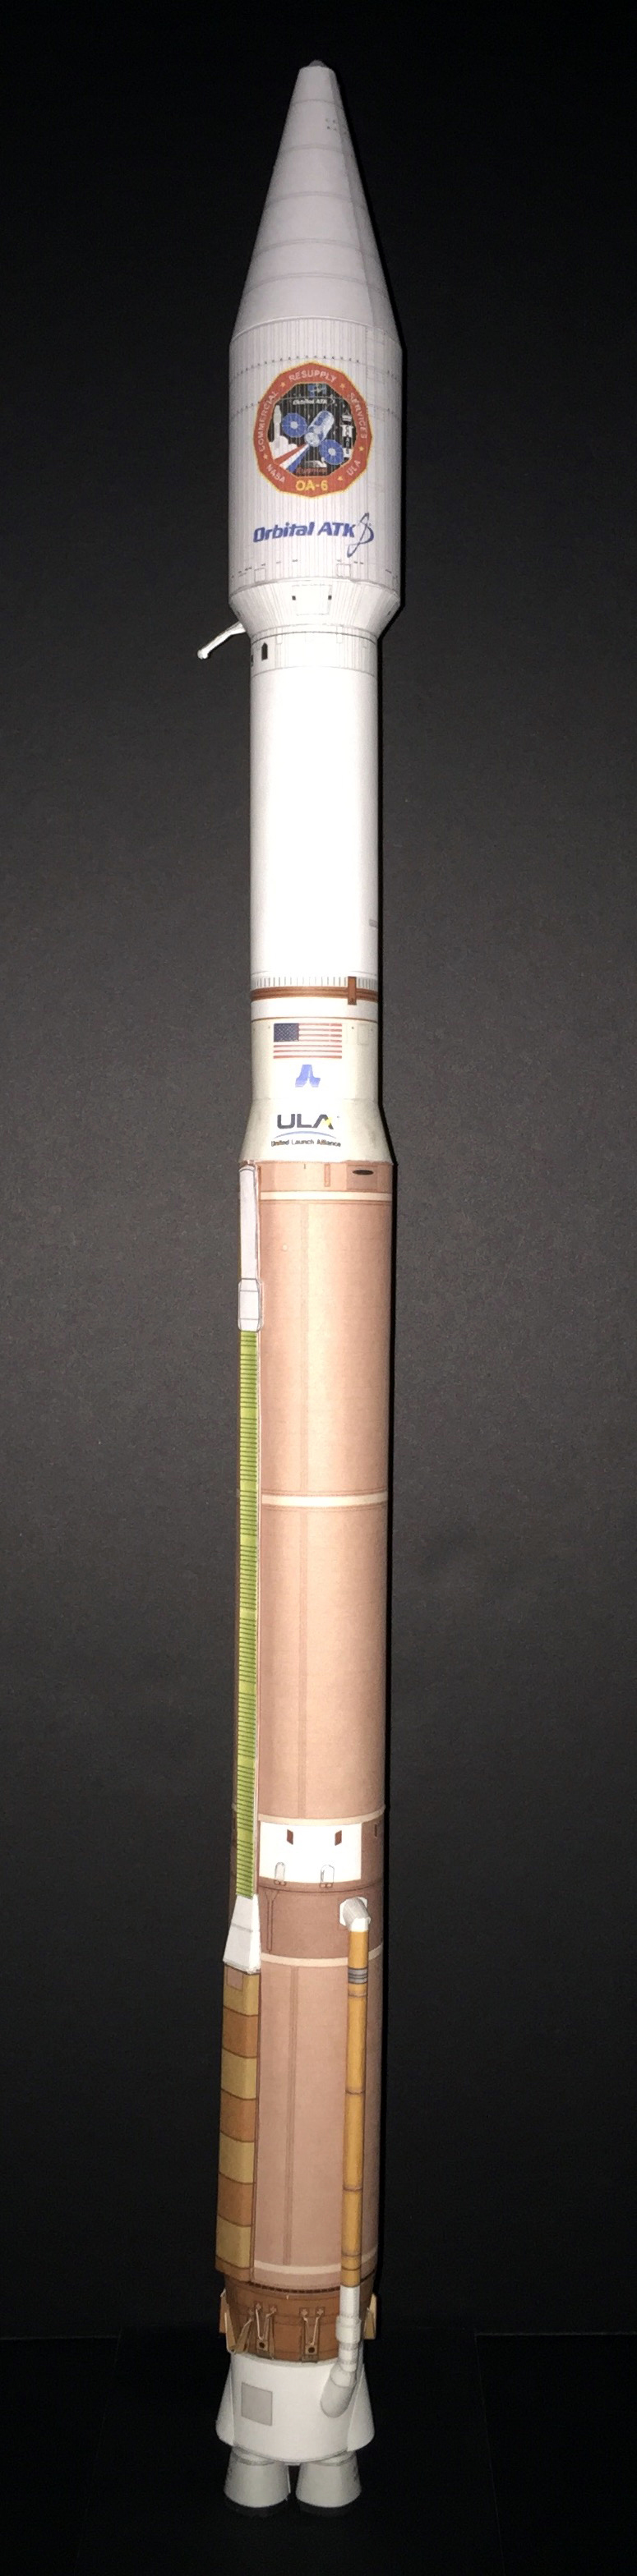 Atlas V OA-6-image